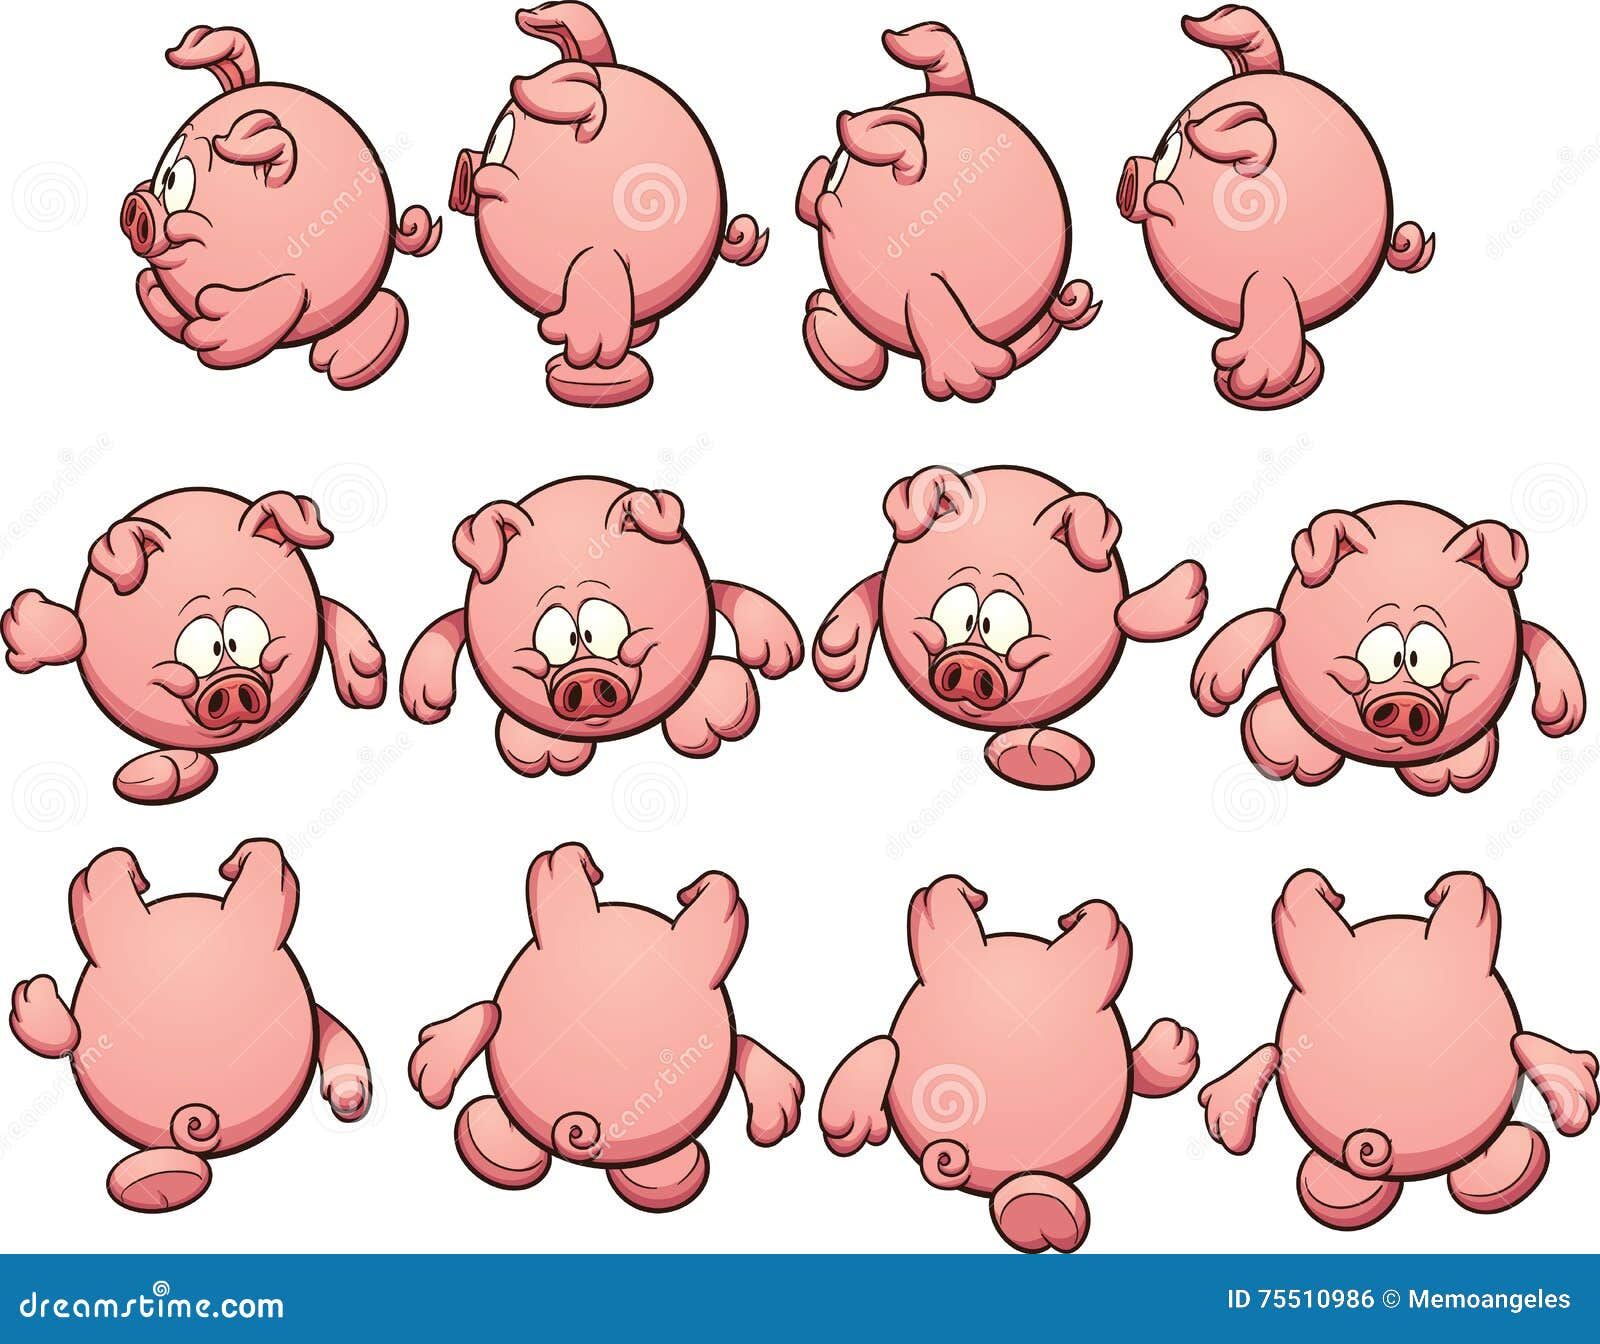 猪动物行走的概念插画图片素材_ID:423799844-Veer图库